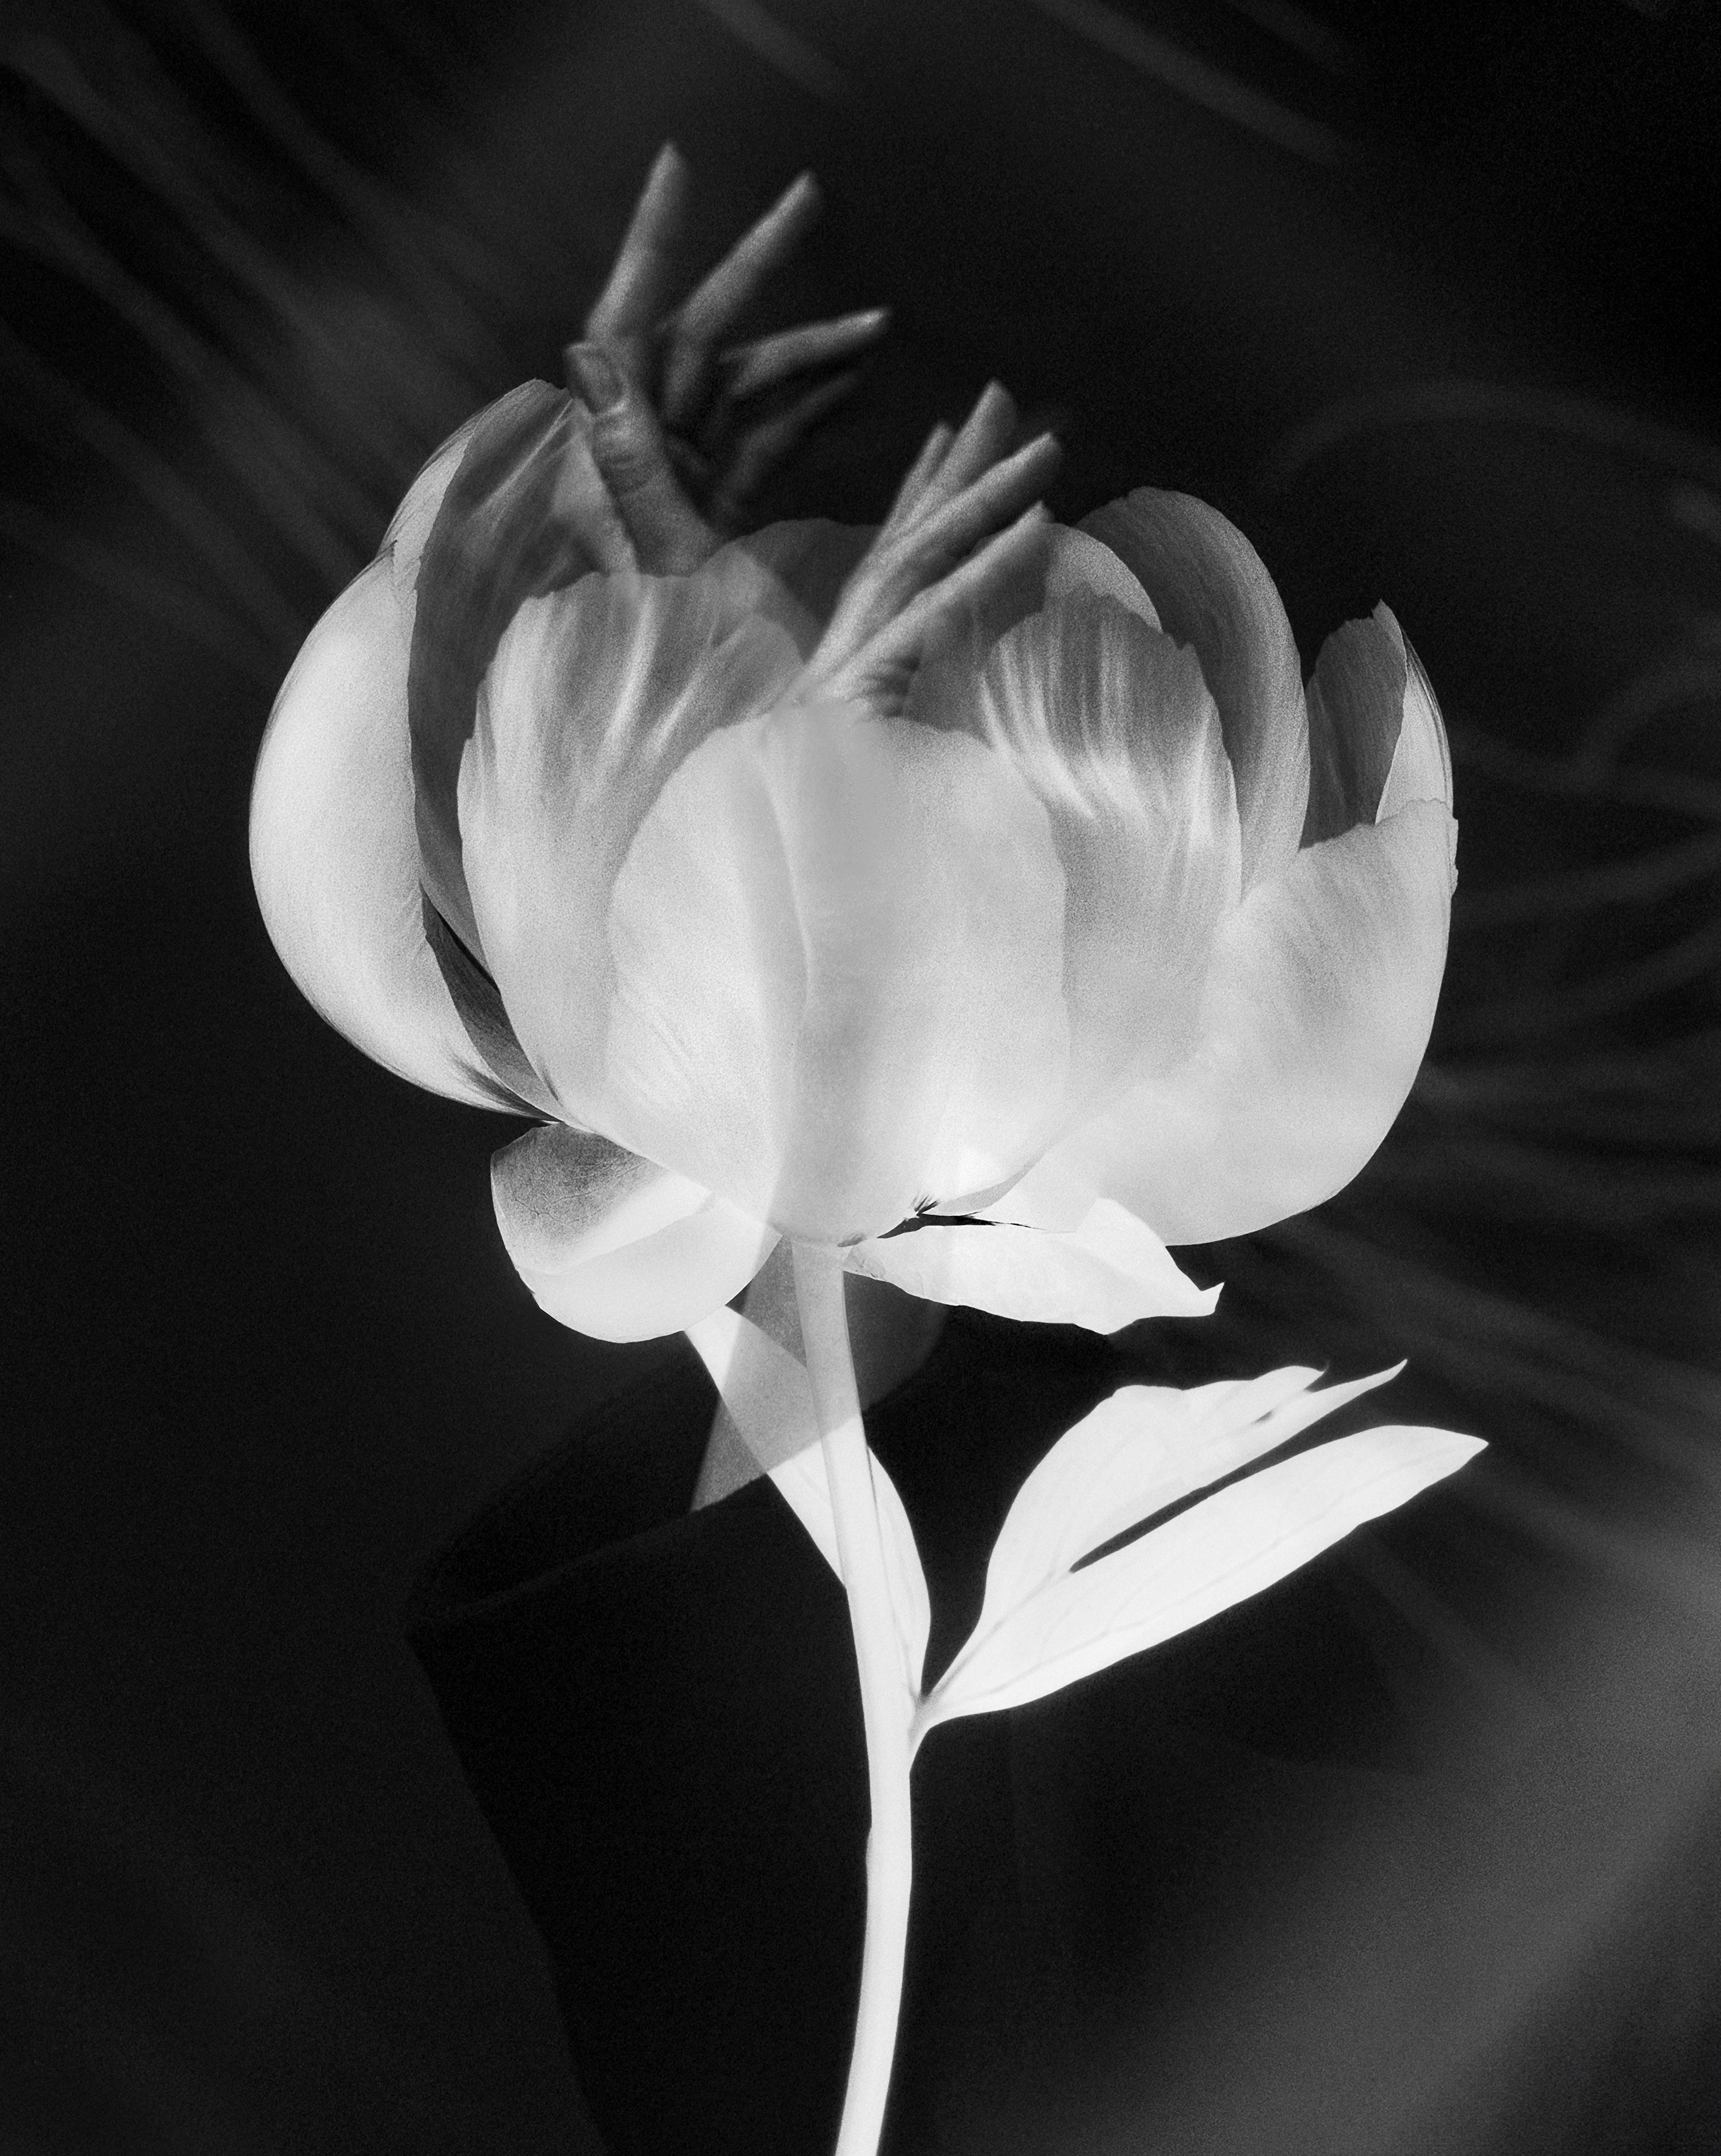 Ugne Pouwell Still-Life Photograph – „Blooming hands“ Doppelbelichtungsfotografie der bildenden Kunstfotografie, Auflage von 20 Stück